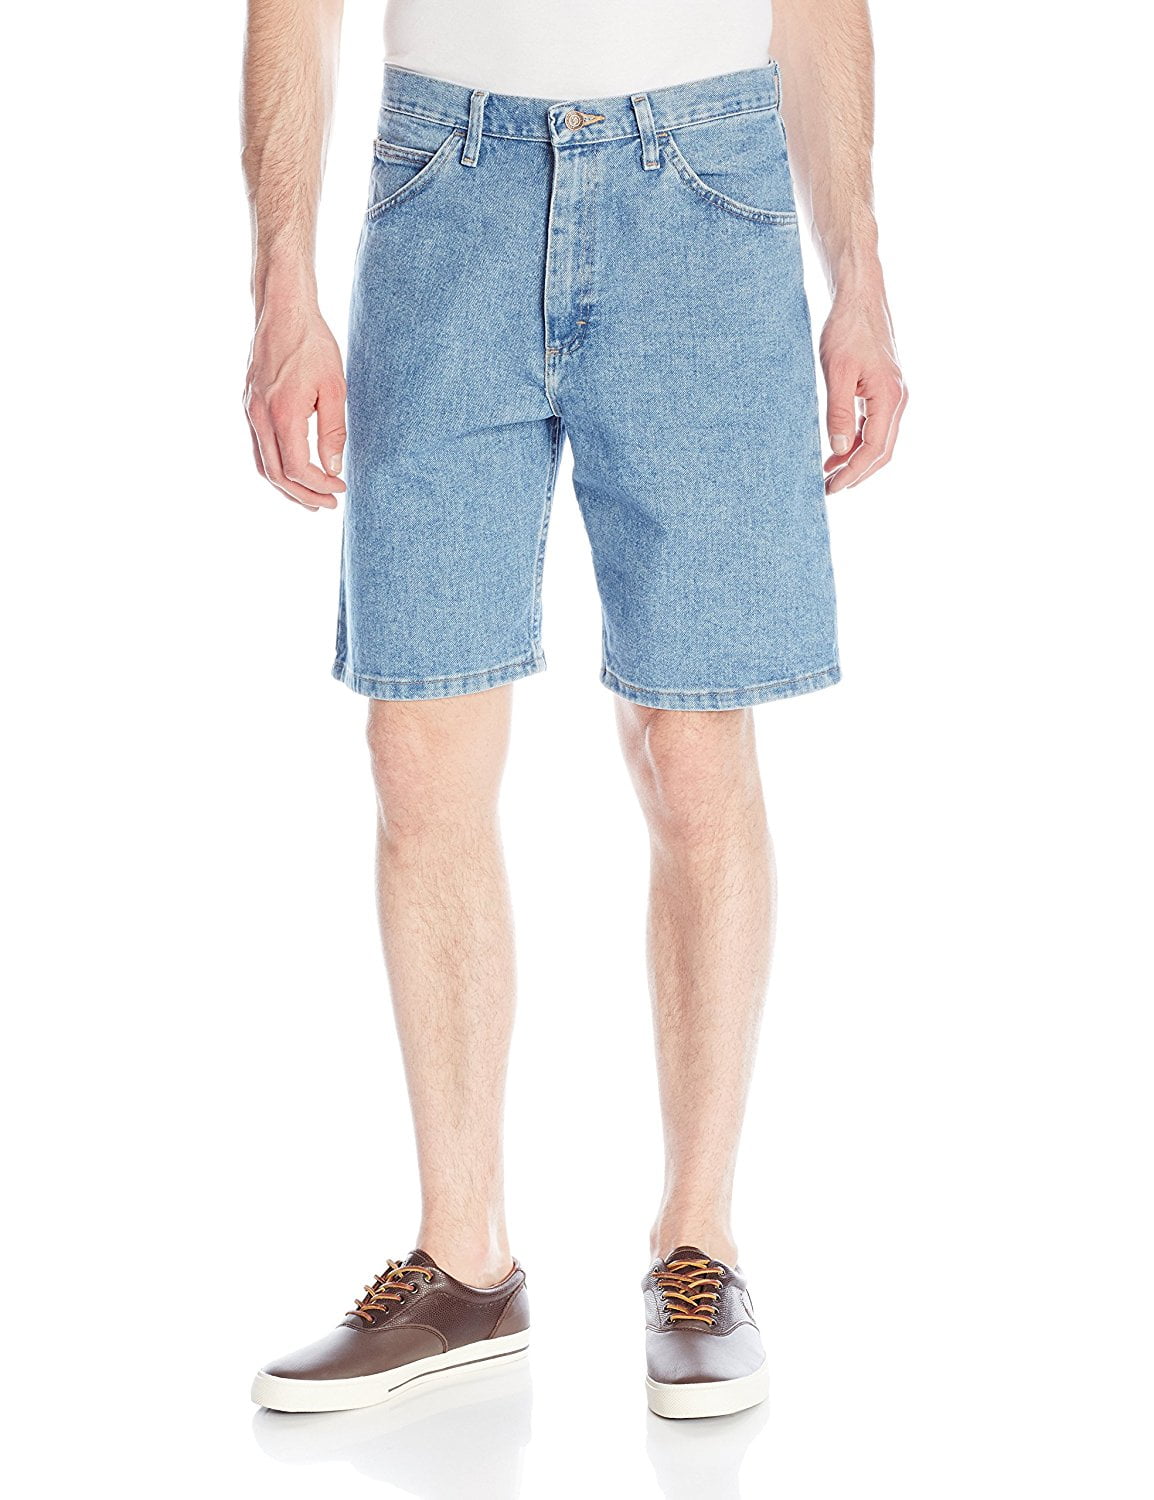 wrangler jean shorts for men